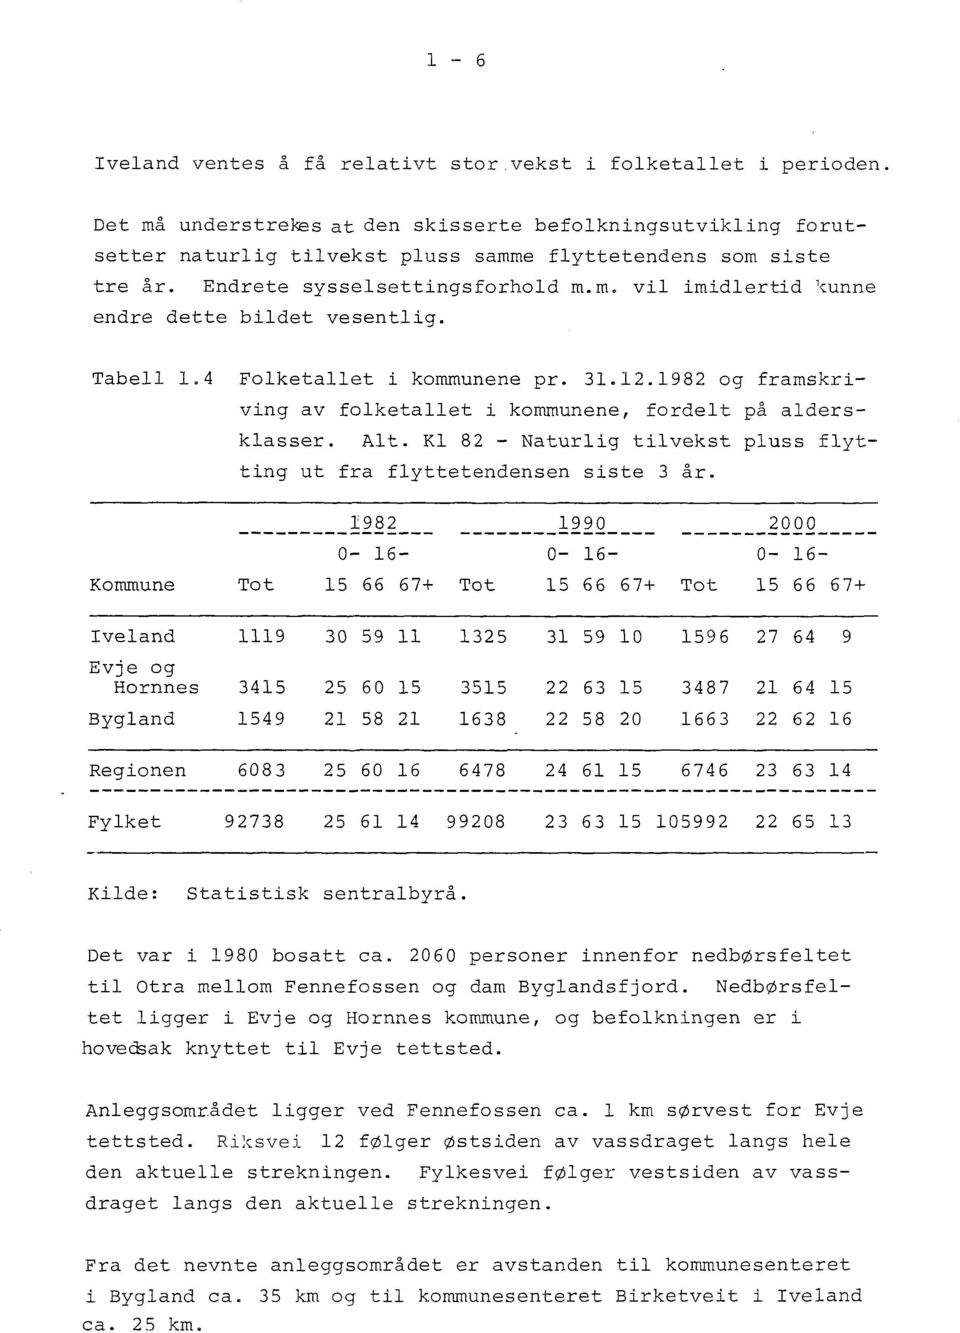 Tabell 1.4 Folketallet i kommunene pr. 31.12.1982 og framskriving av folketallet i kommunene, fordelt på aldersklasser. Alt. Kl 82 - Naturlig tilvekst pluss flytting ut fra flyttetendensen siste 3 år.